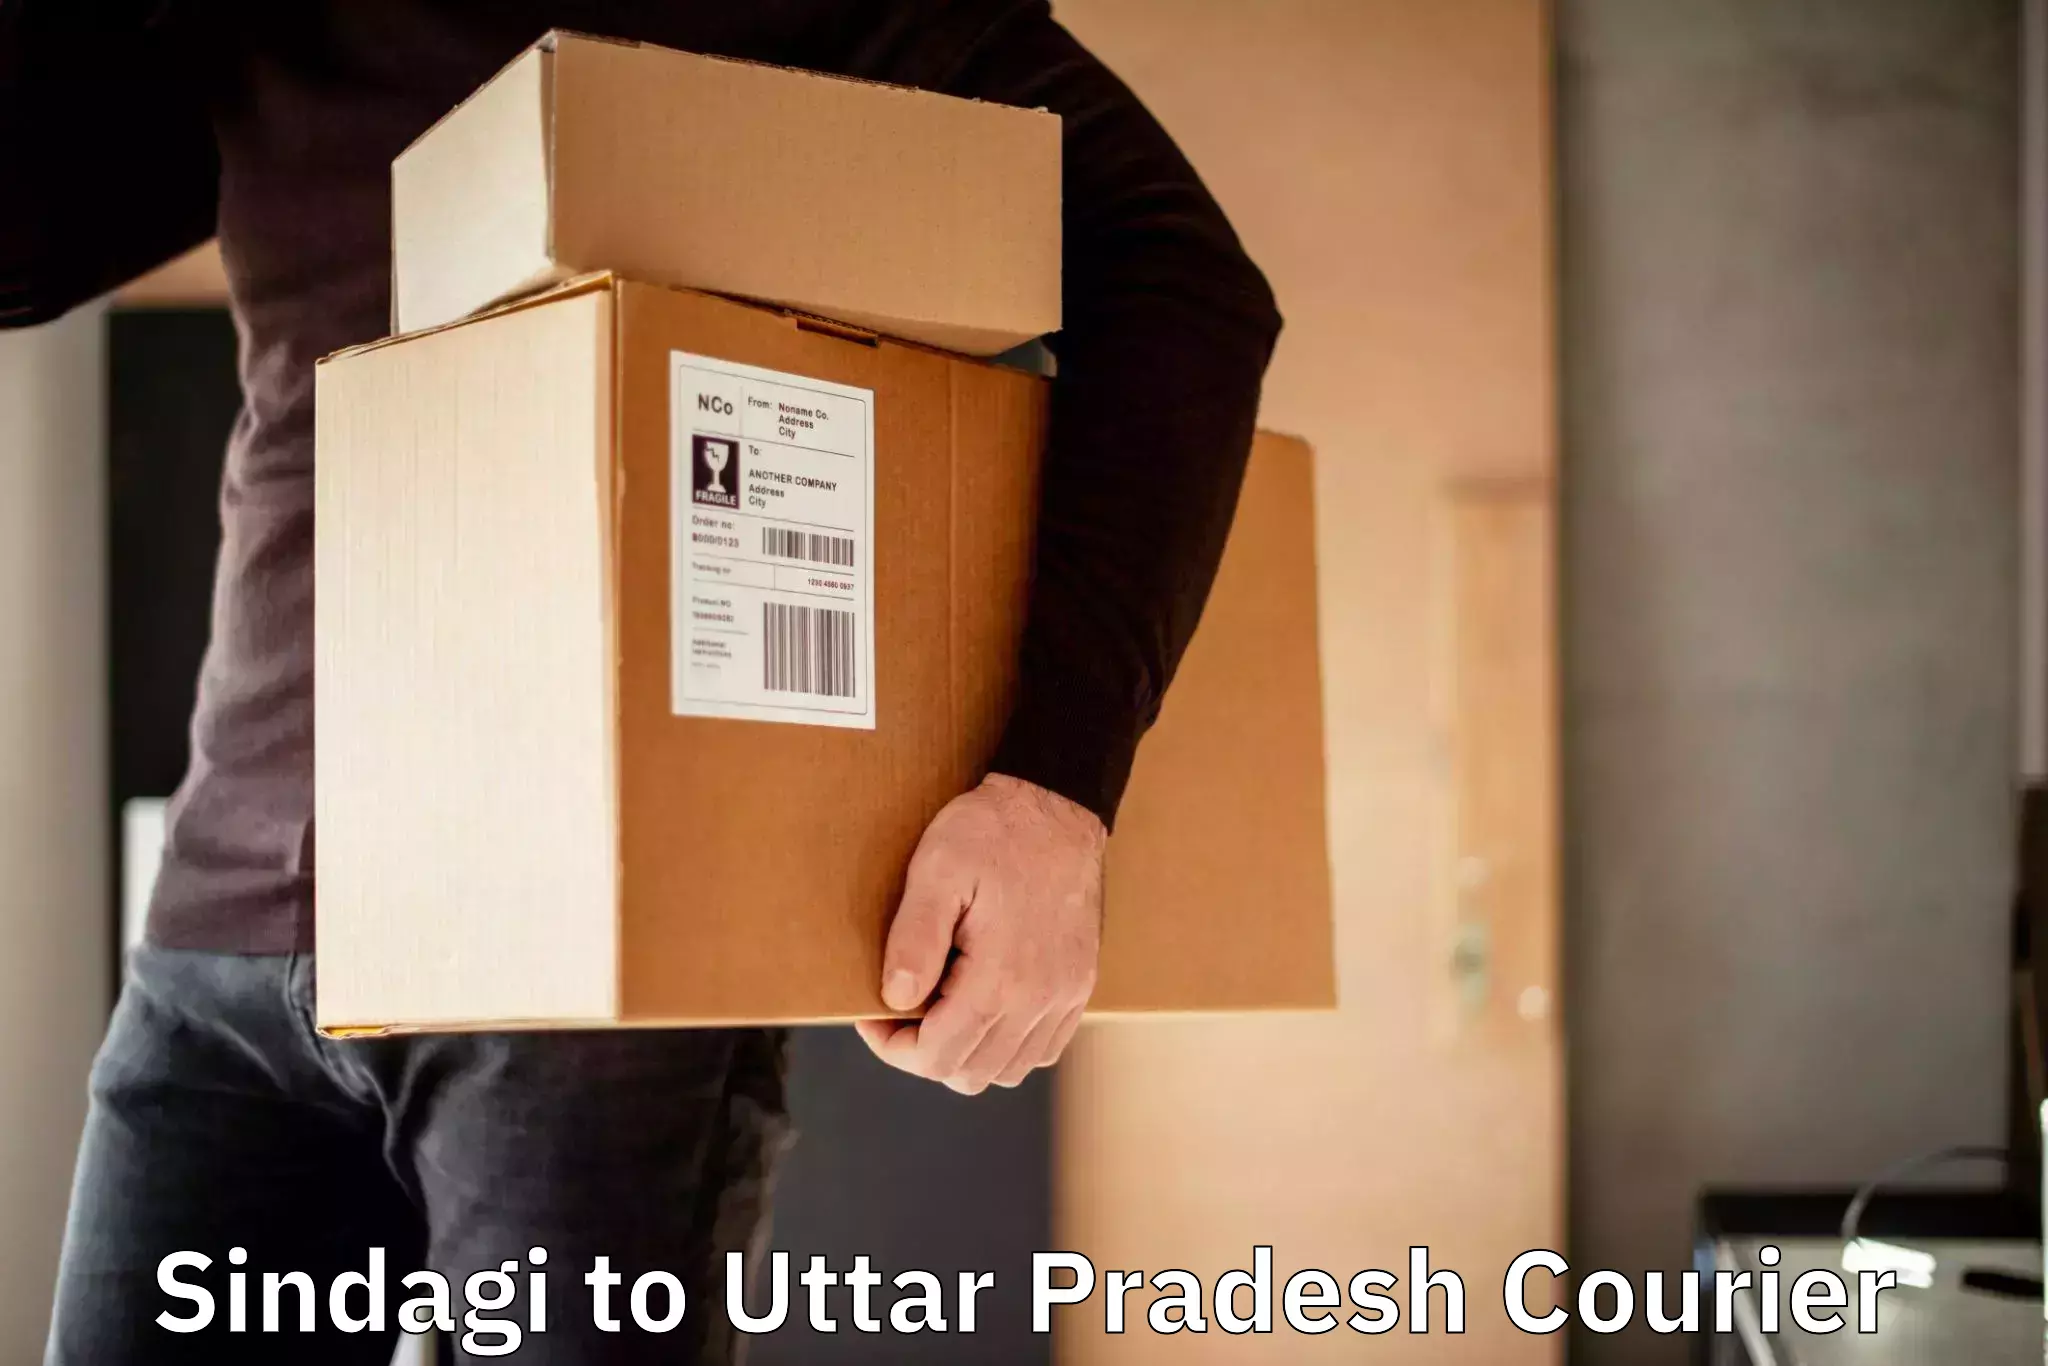 Global courier networks Sindagi to Uttar Pradesh